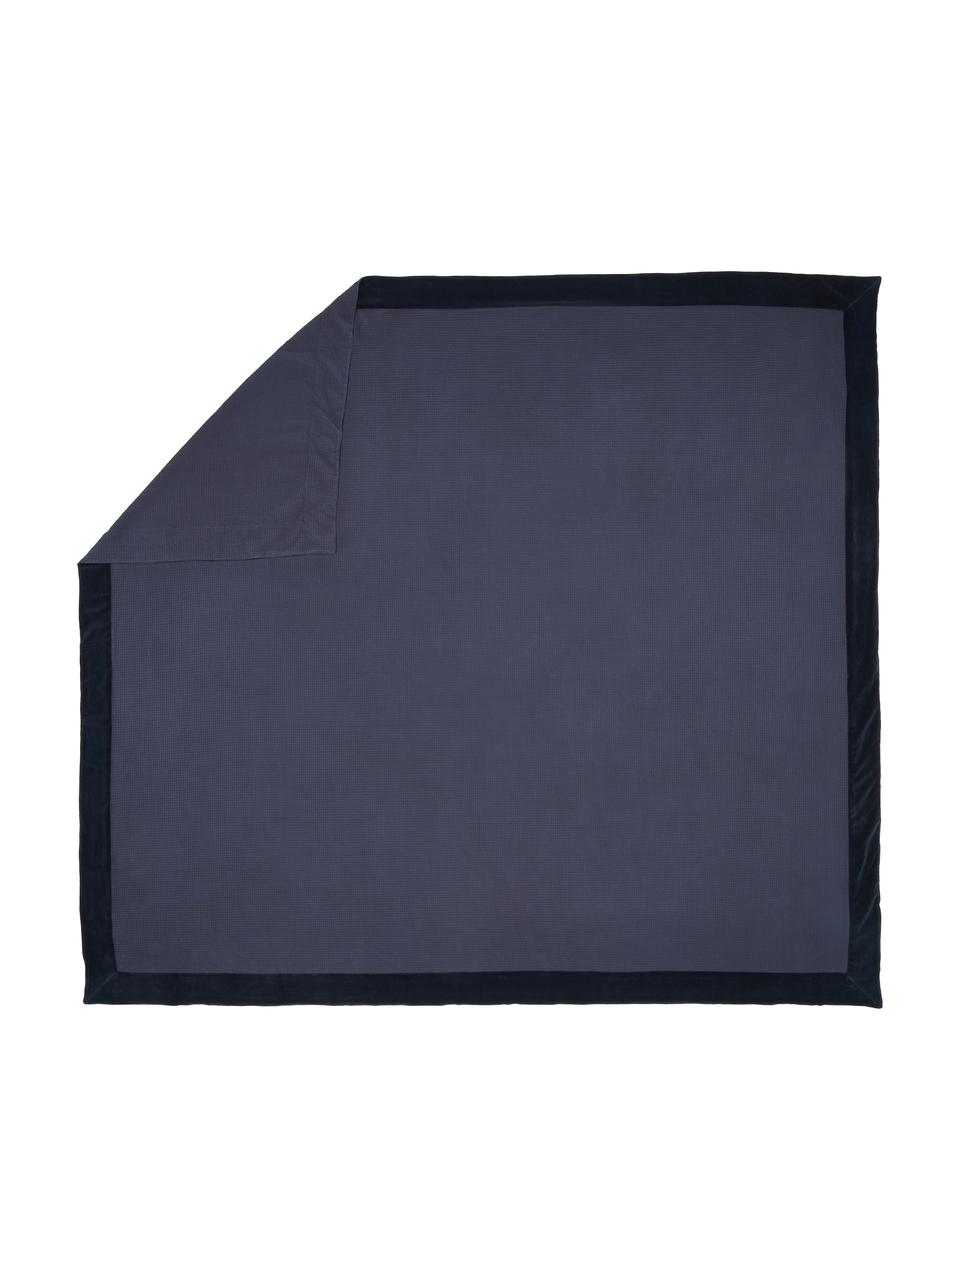 Waffelpiqué-Tagesdecke  Nordic aus Baumwolle in Blau, 100 % Baumwolle, Dunkelblau, B 260 x L 280 cm (für Betten bis 200 x 200 cm)